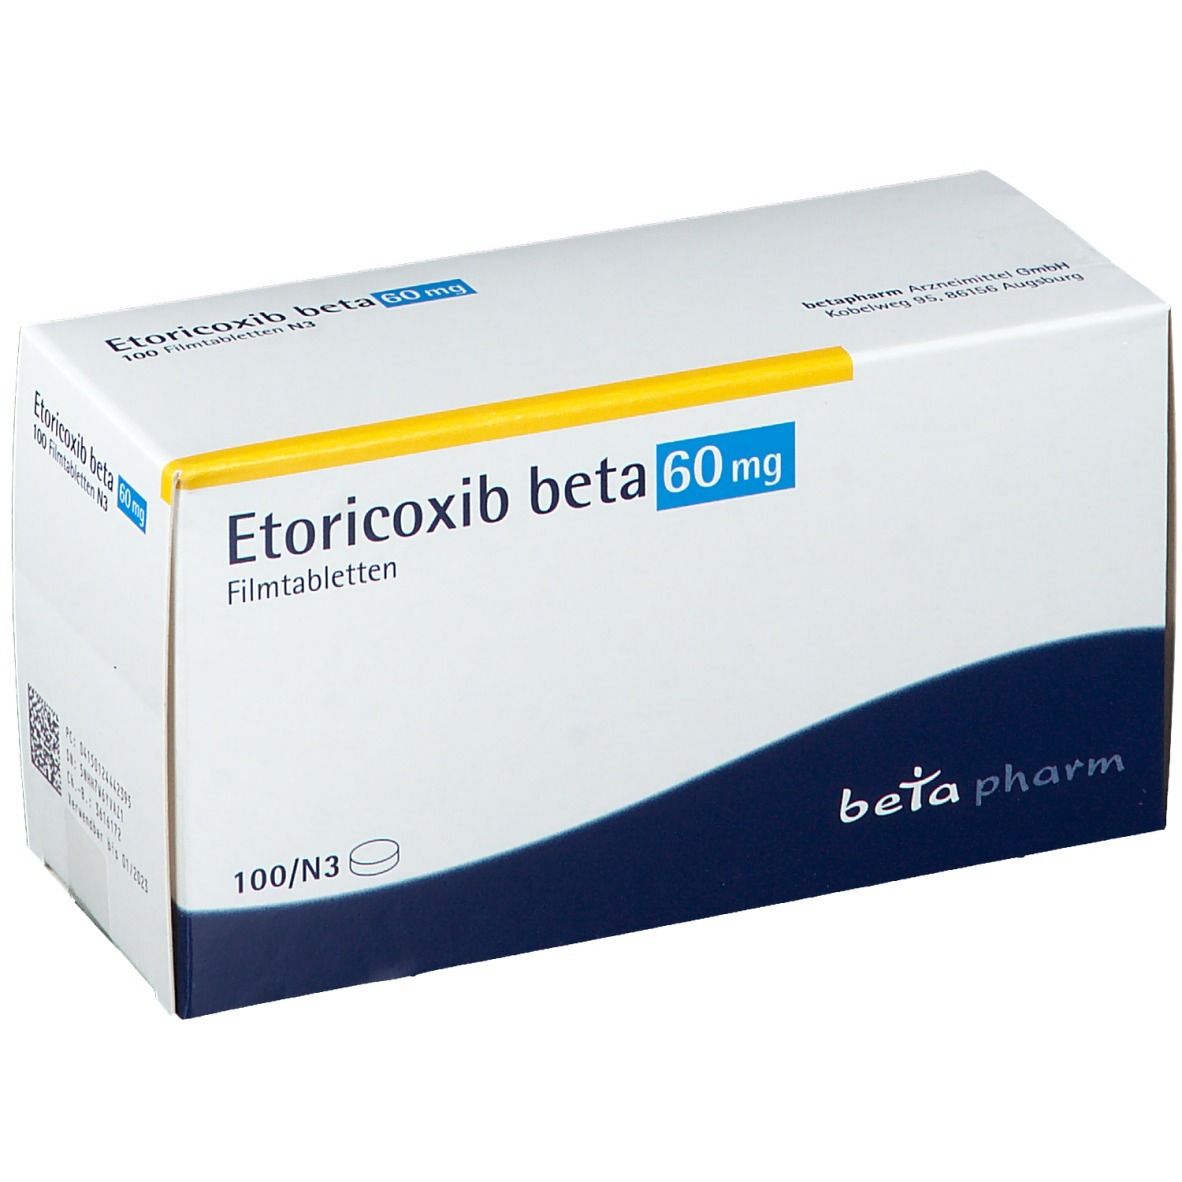 Etoricoxib beta 60 mg